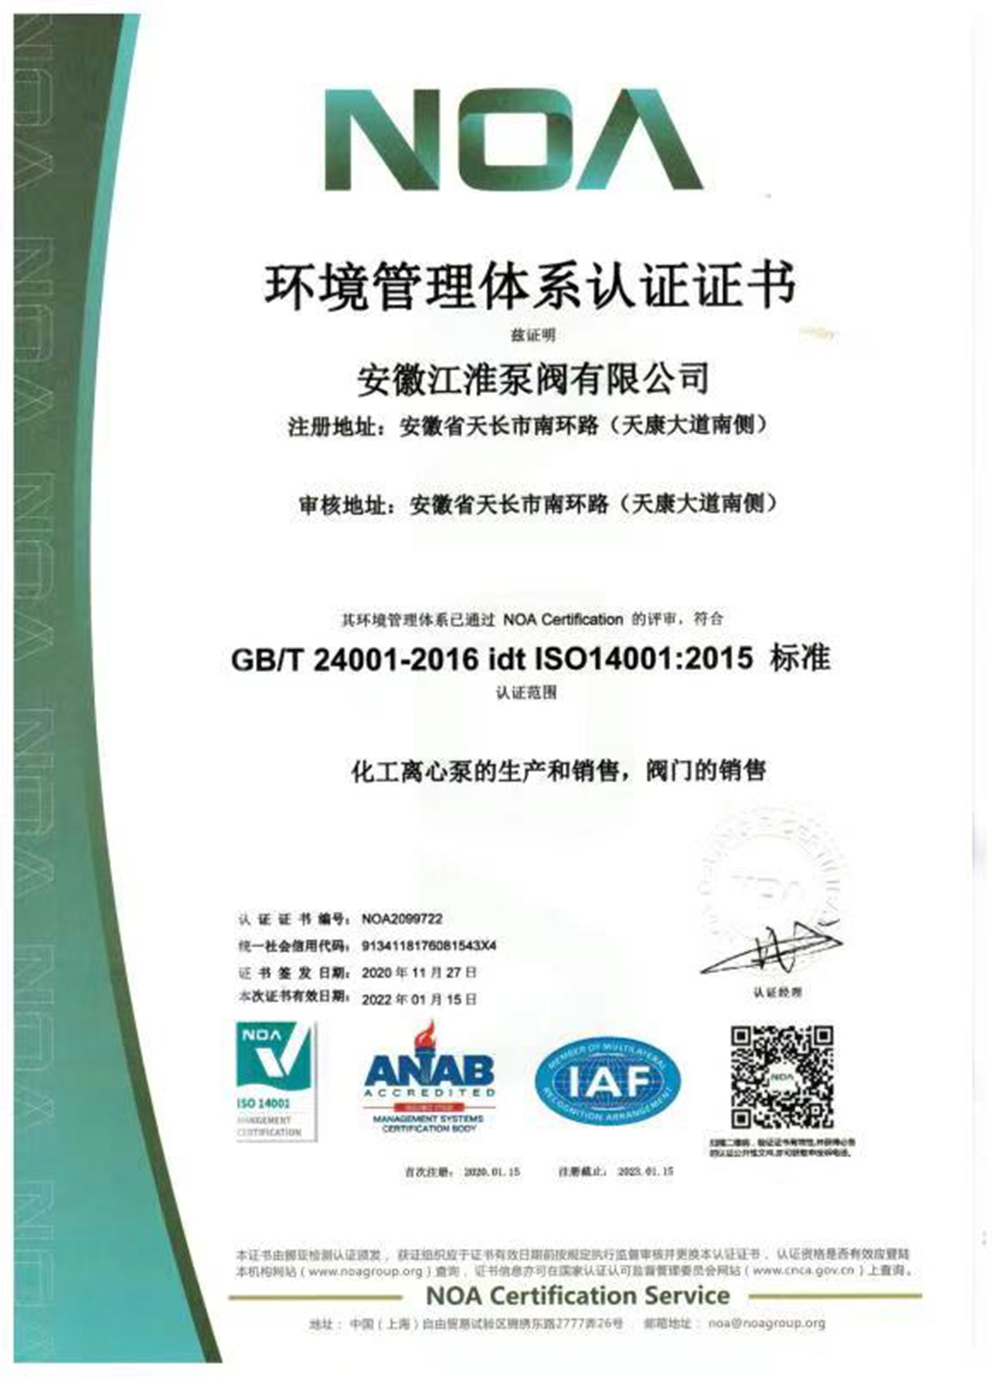 5、环境管理体系认证证书.jpg